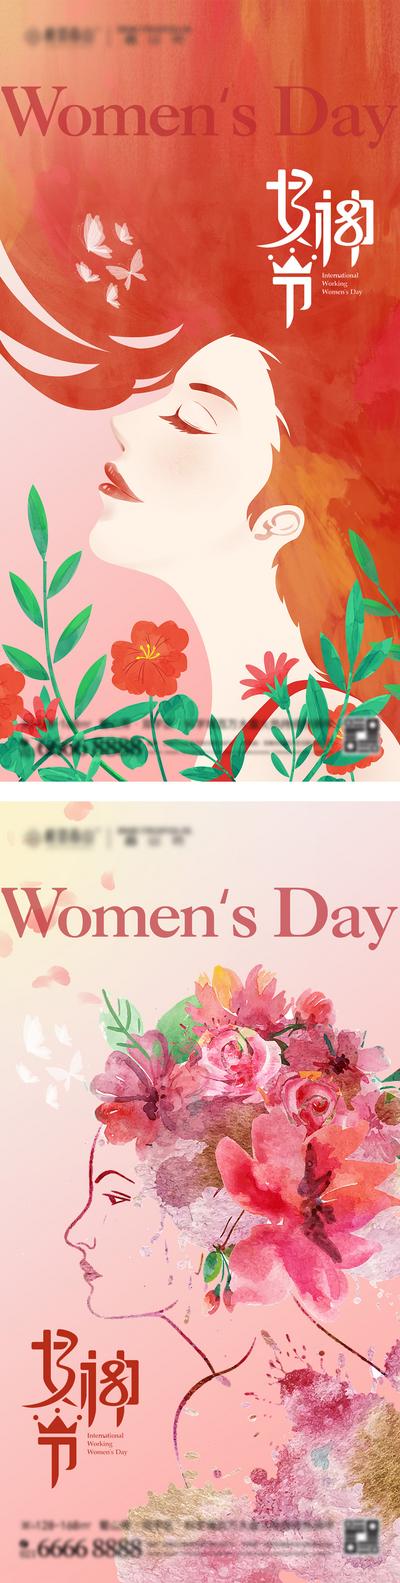 【南门网】广告 海报 插画 妇女节 节日 系列 房地产 38 女神节 女王节 手绘 女性